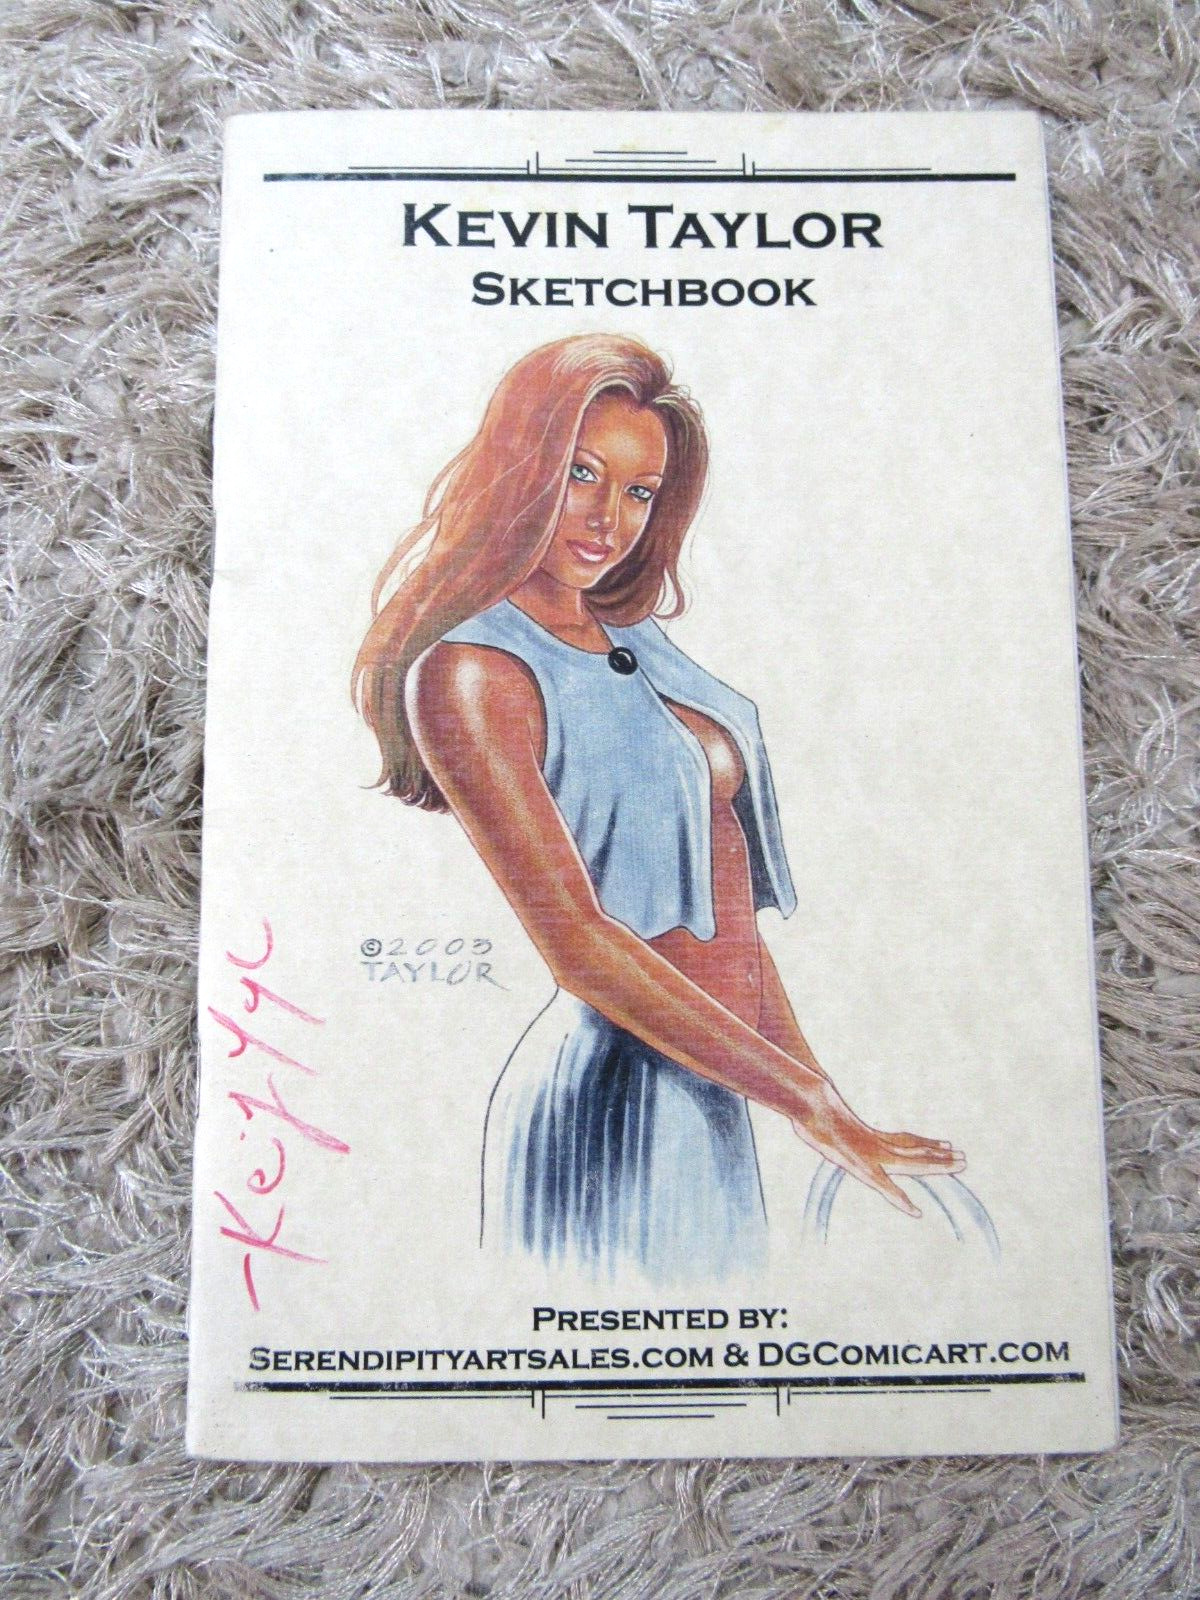 Rare Vintage Kevin Taylor Signed Sketchbook - 2004 - Original Artwork - Pin-Up